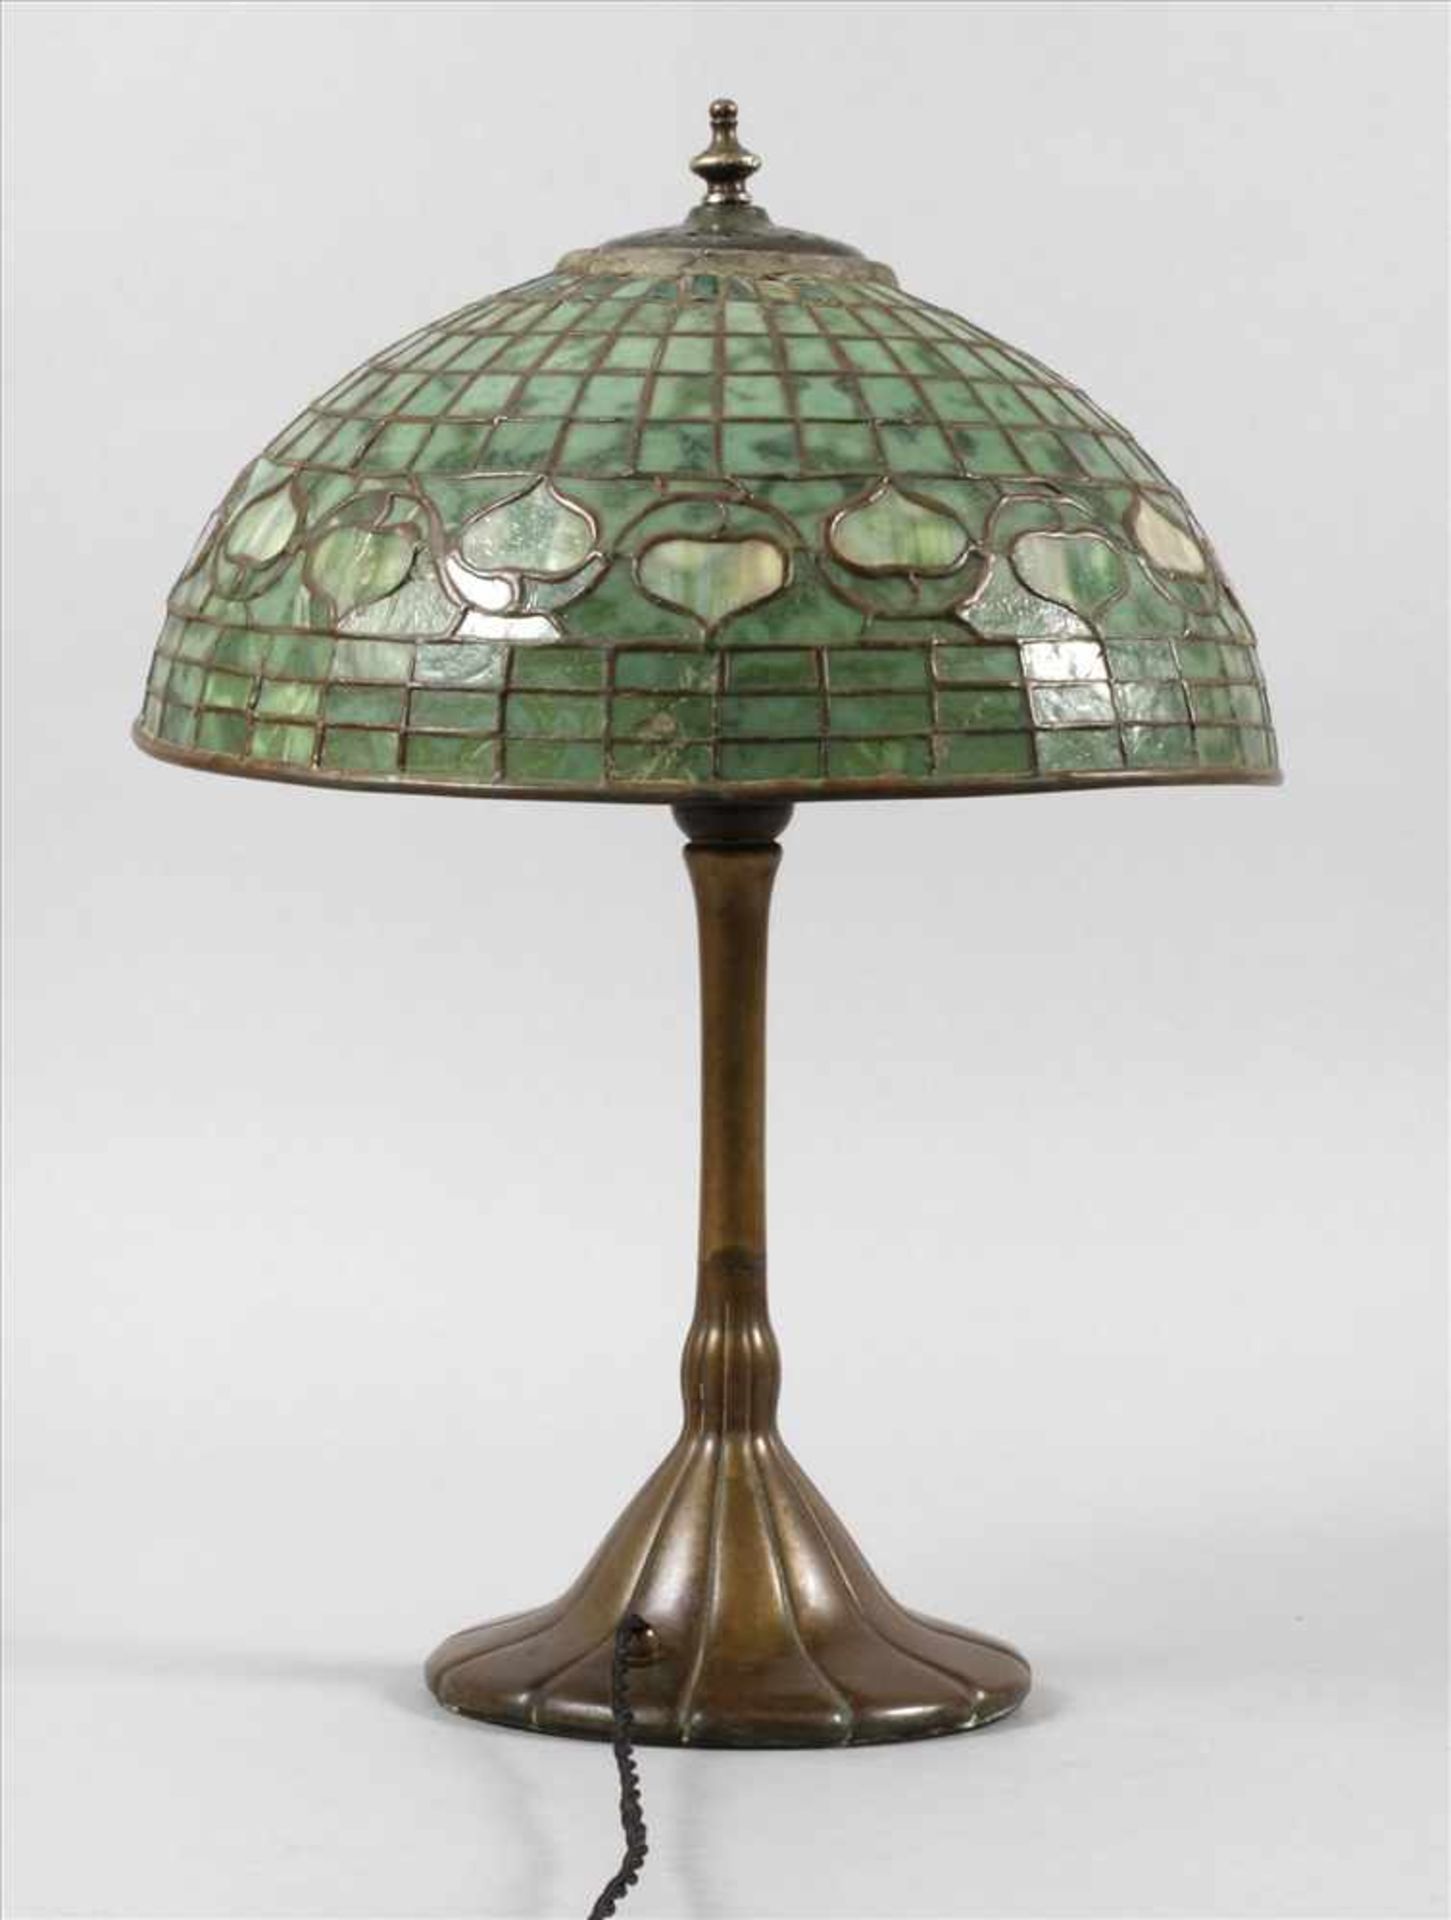 Tischlampe USA um 1910, ungemarkt, Pilzförmiger Schirm aus grün marmoriertem Bleiglas, Bronzefuß